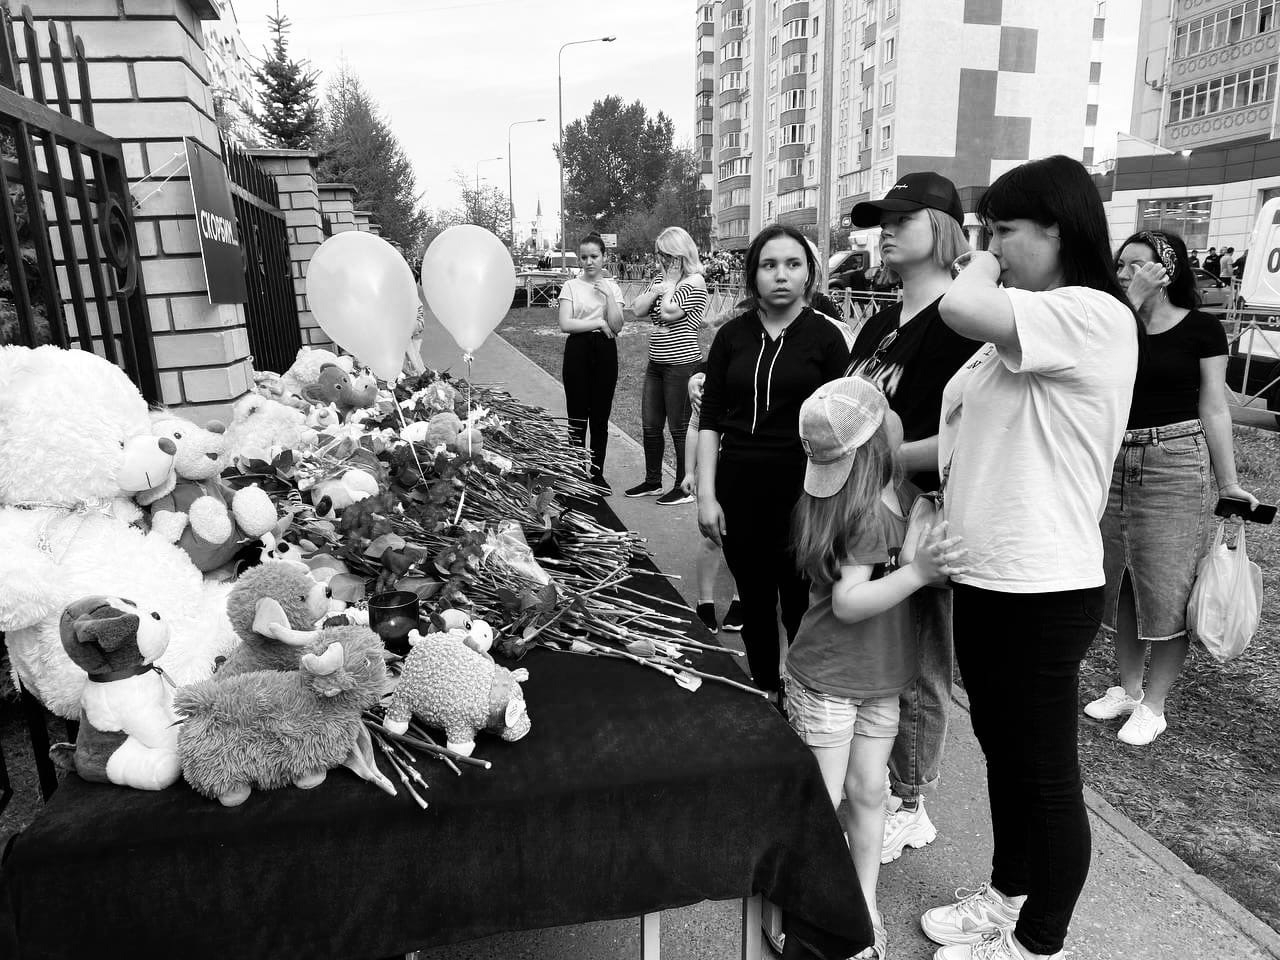 Теракт в Казани. Причины и последствия трагедии по мнению экспертов и общественных деятелей